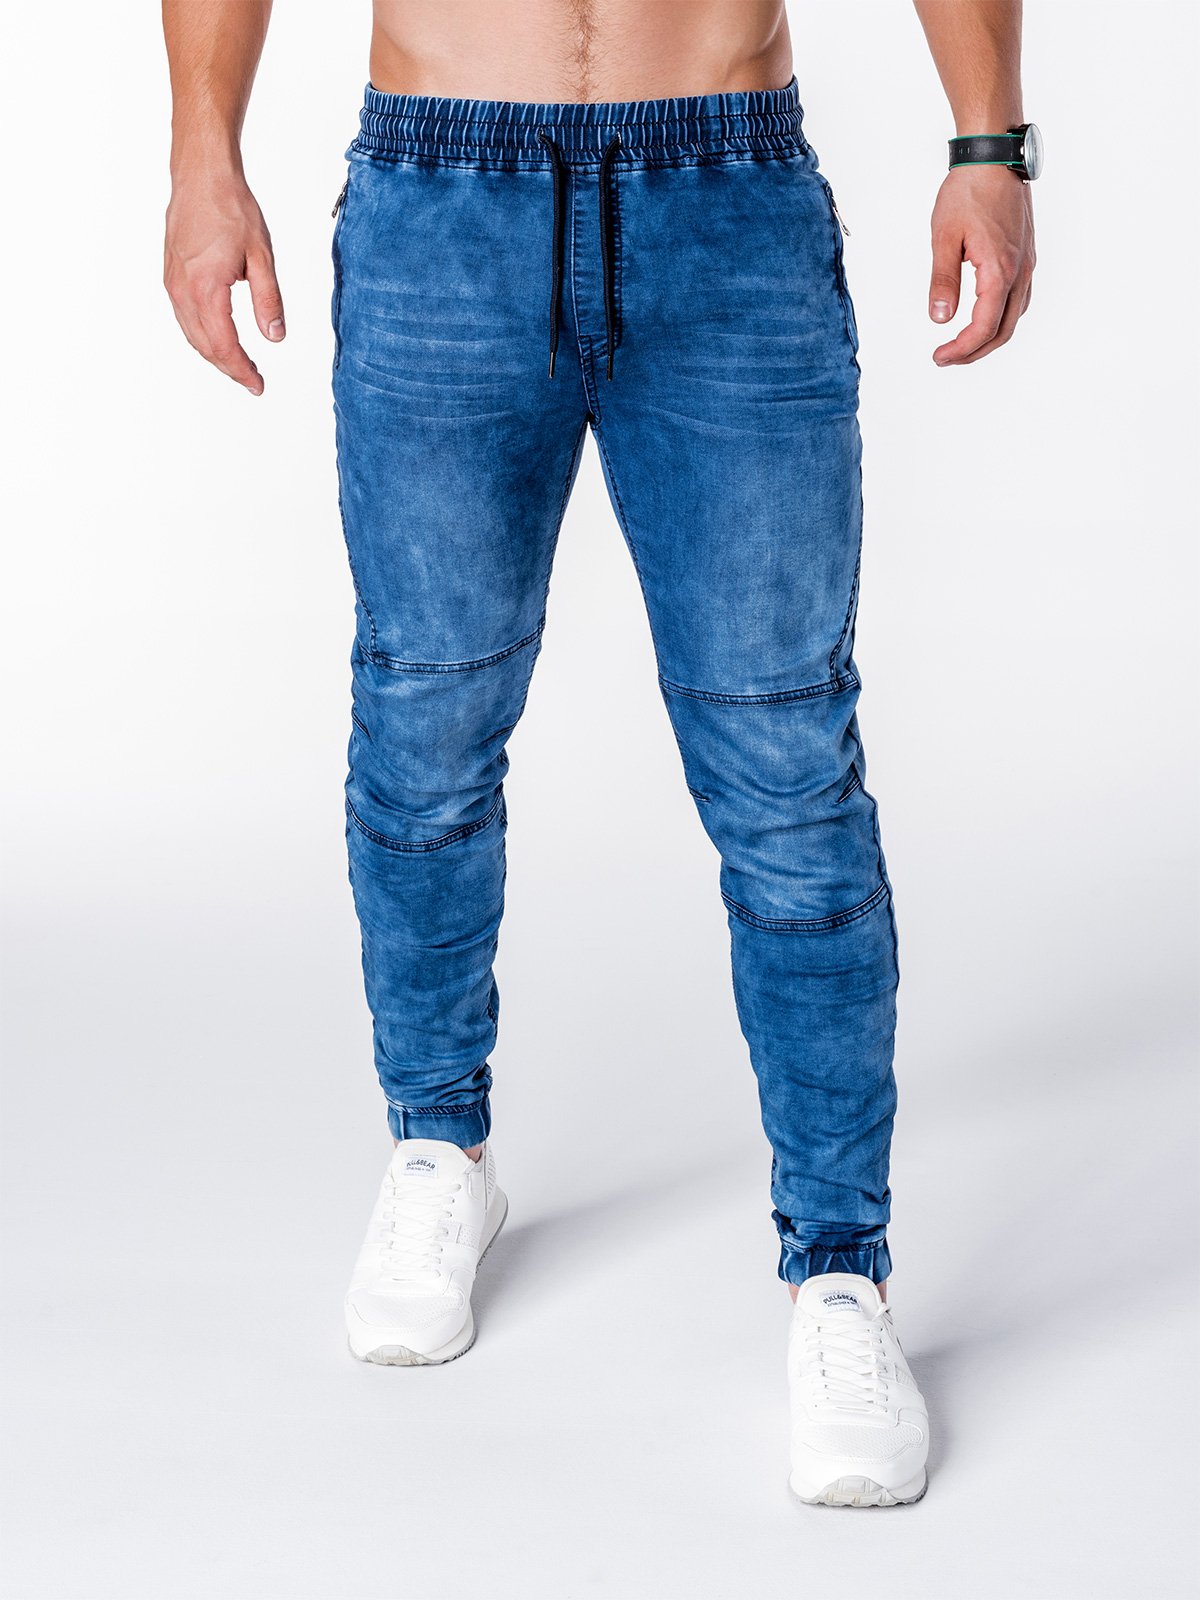 Men's denim jogger pants P711 - blue | MODONE wholesale - Clothing For Men